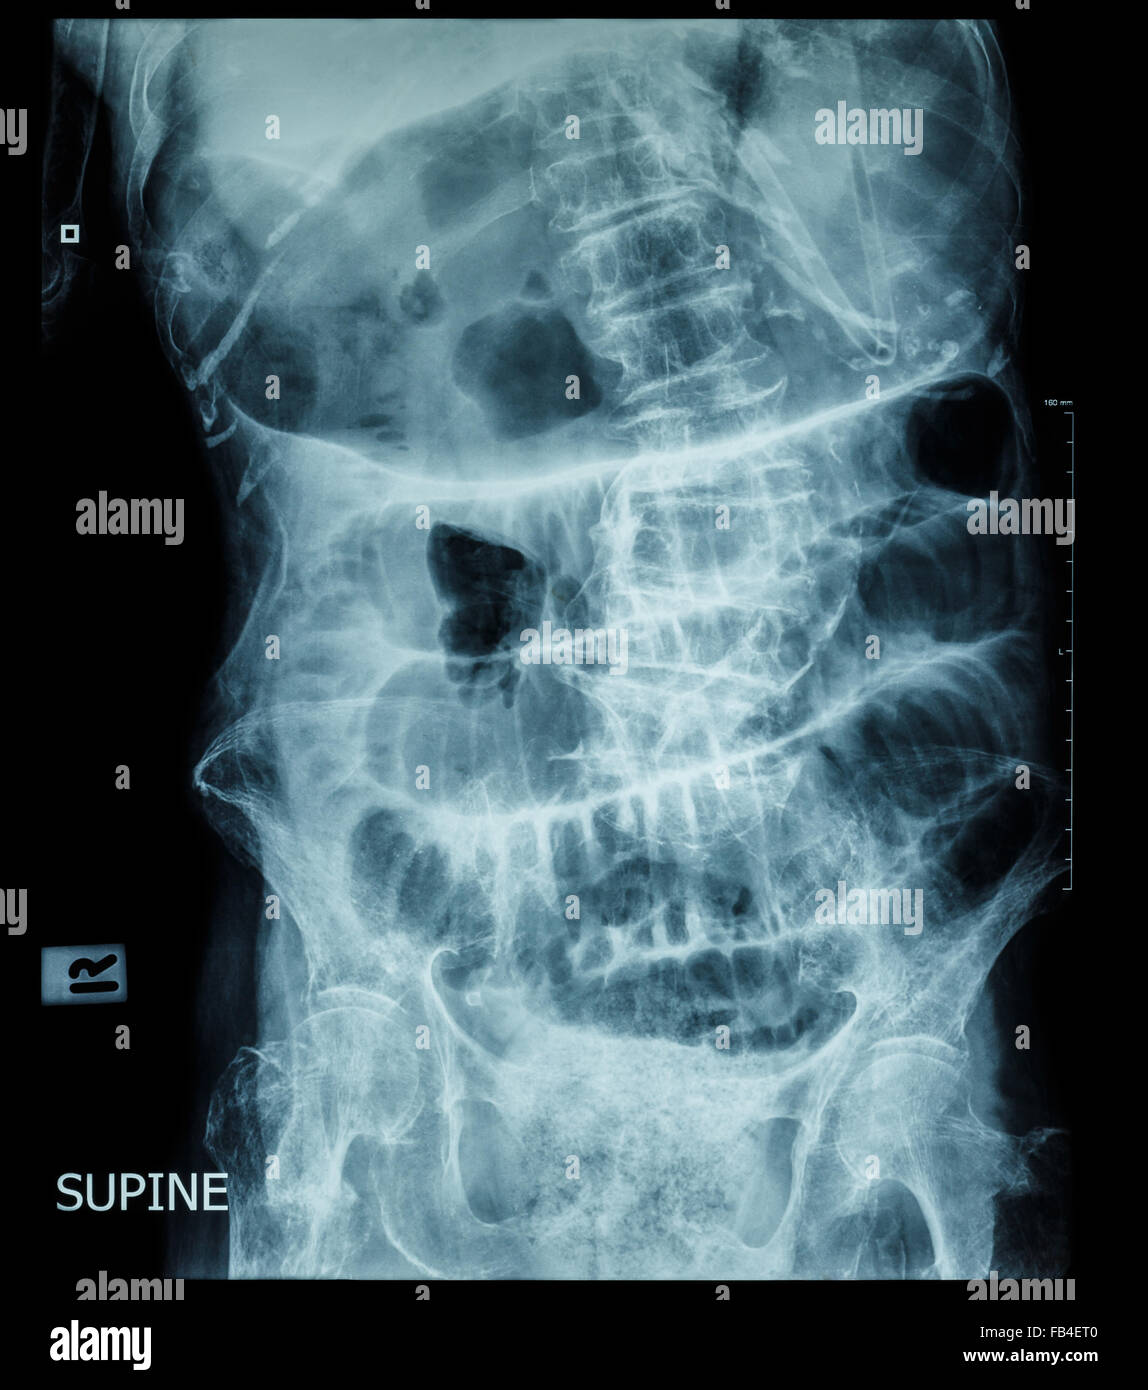 Kleinen Darmverschluss (Film Röntgen-Abdomen (Rückenlage): Show Dünndarm und Magen dehnen) (Leiter Schrittmuster) Stockfoto